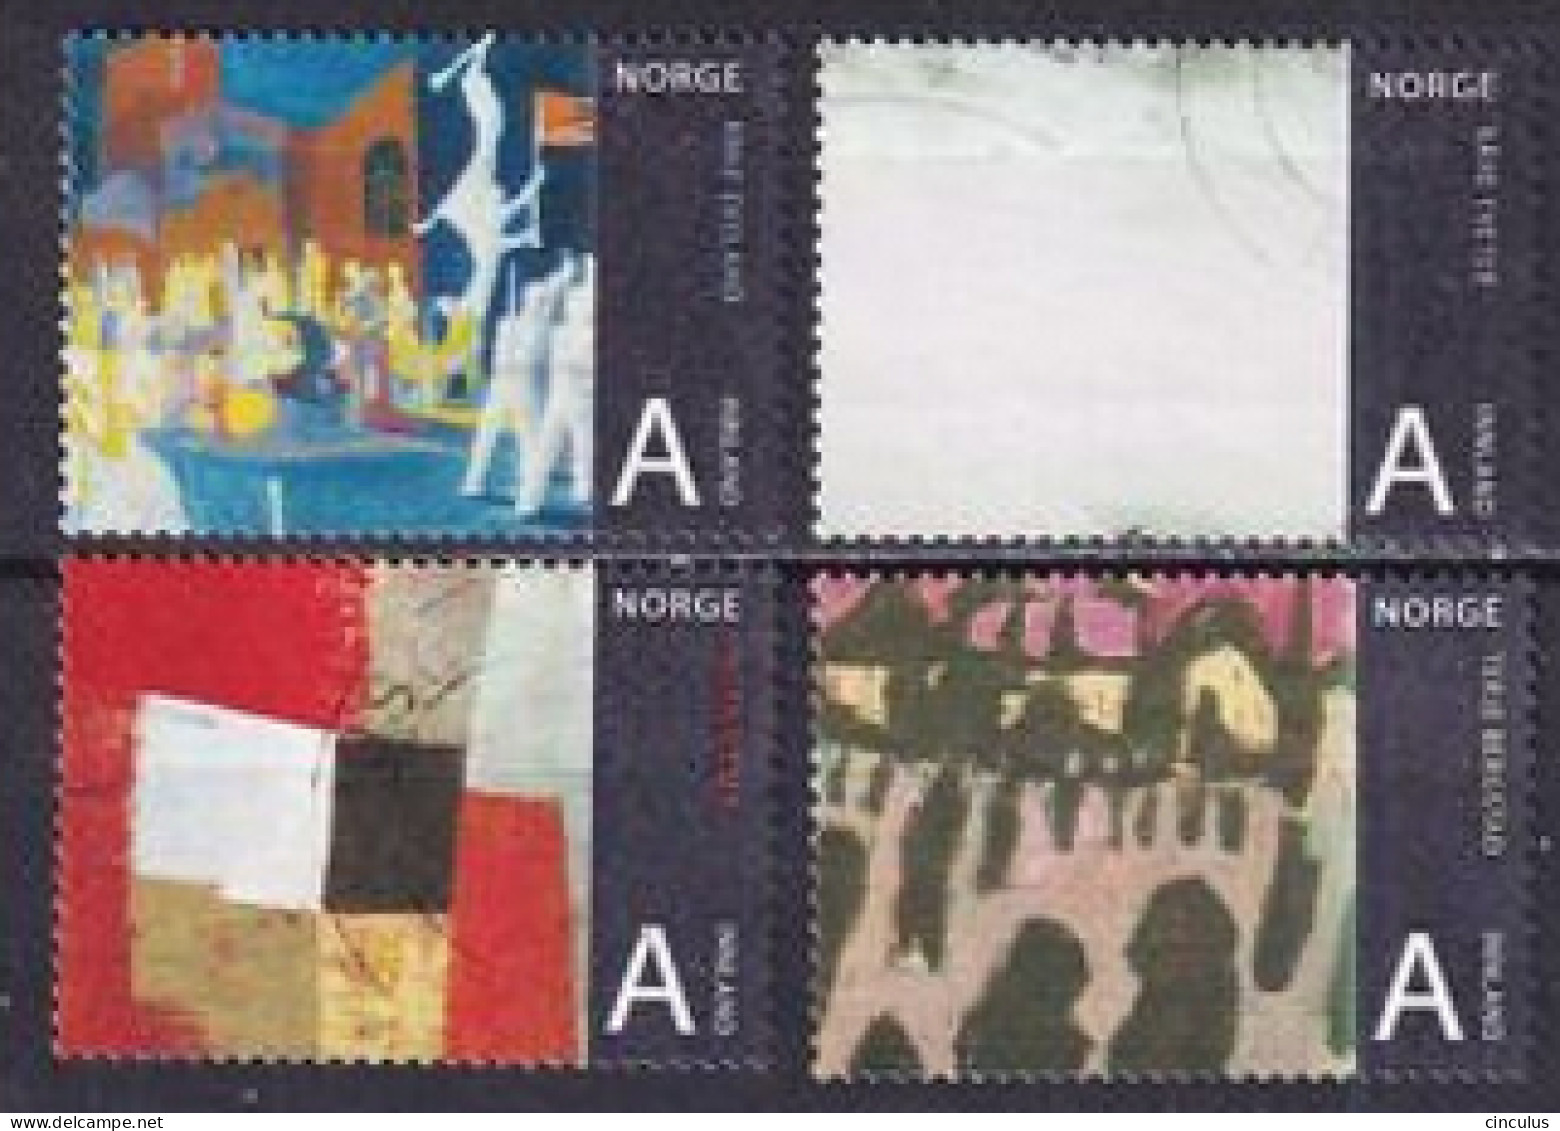 2008. Norway. Norwegian Art. Used. Mi. Nr. 1665-68 - Used Stamps